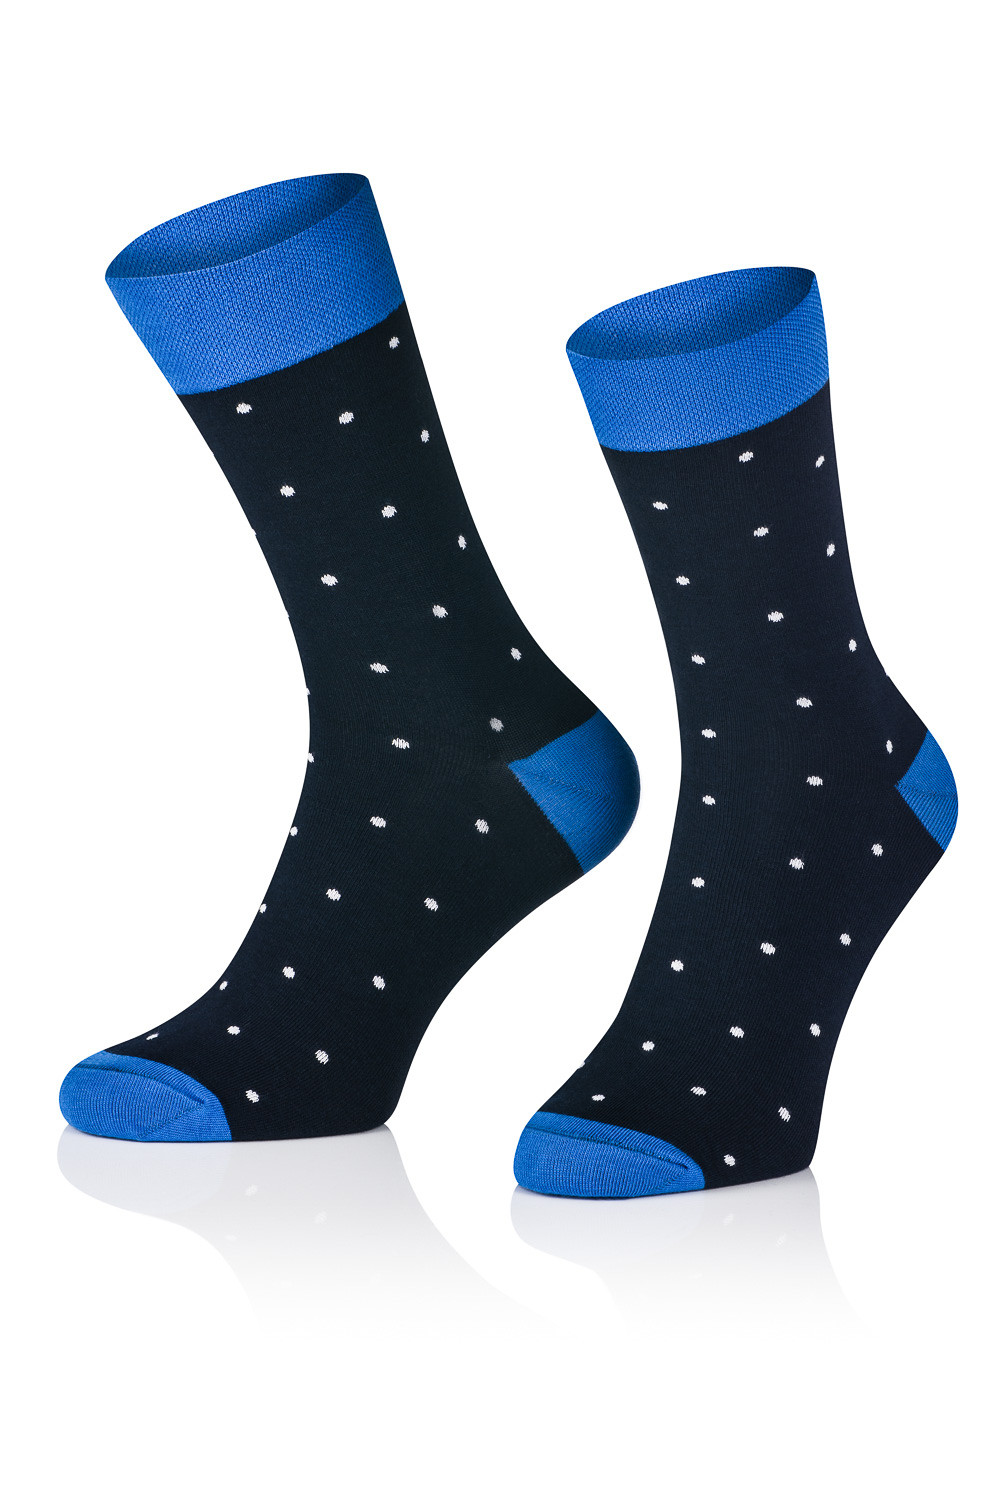 E-shop Pánske vzorované ponožky Tak Intenso 1917 černá 36-40